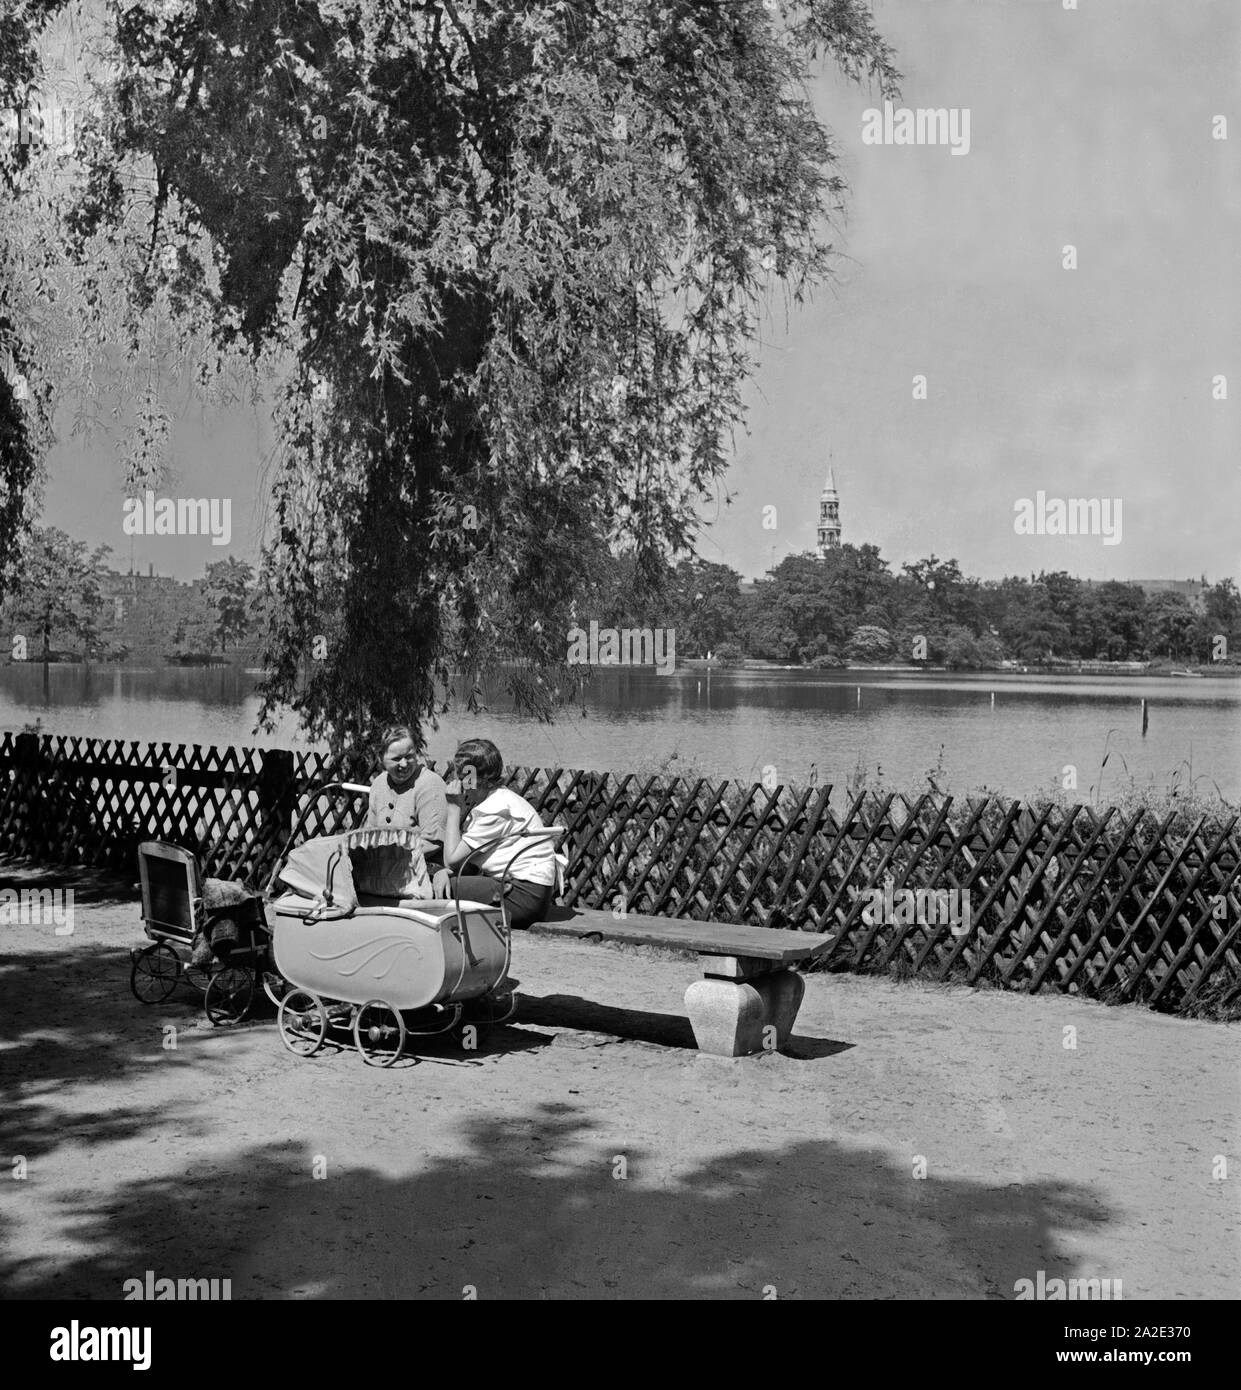 Zwei Mütter mit Kinderwagen unterhalten sich ein 1963 in einem Park in Zwickau, Deutschland 1930er Jahre. Zwei Mütter mit ihren Kinderwagen Chatten an einem See in einem Park in Zwickau, Deutschland 1930. Stockfoto